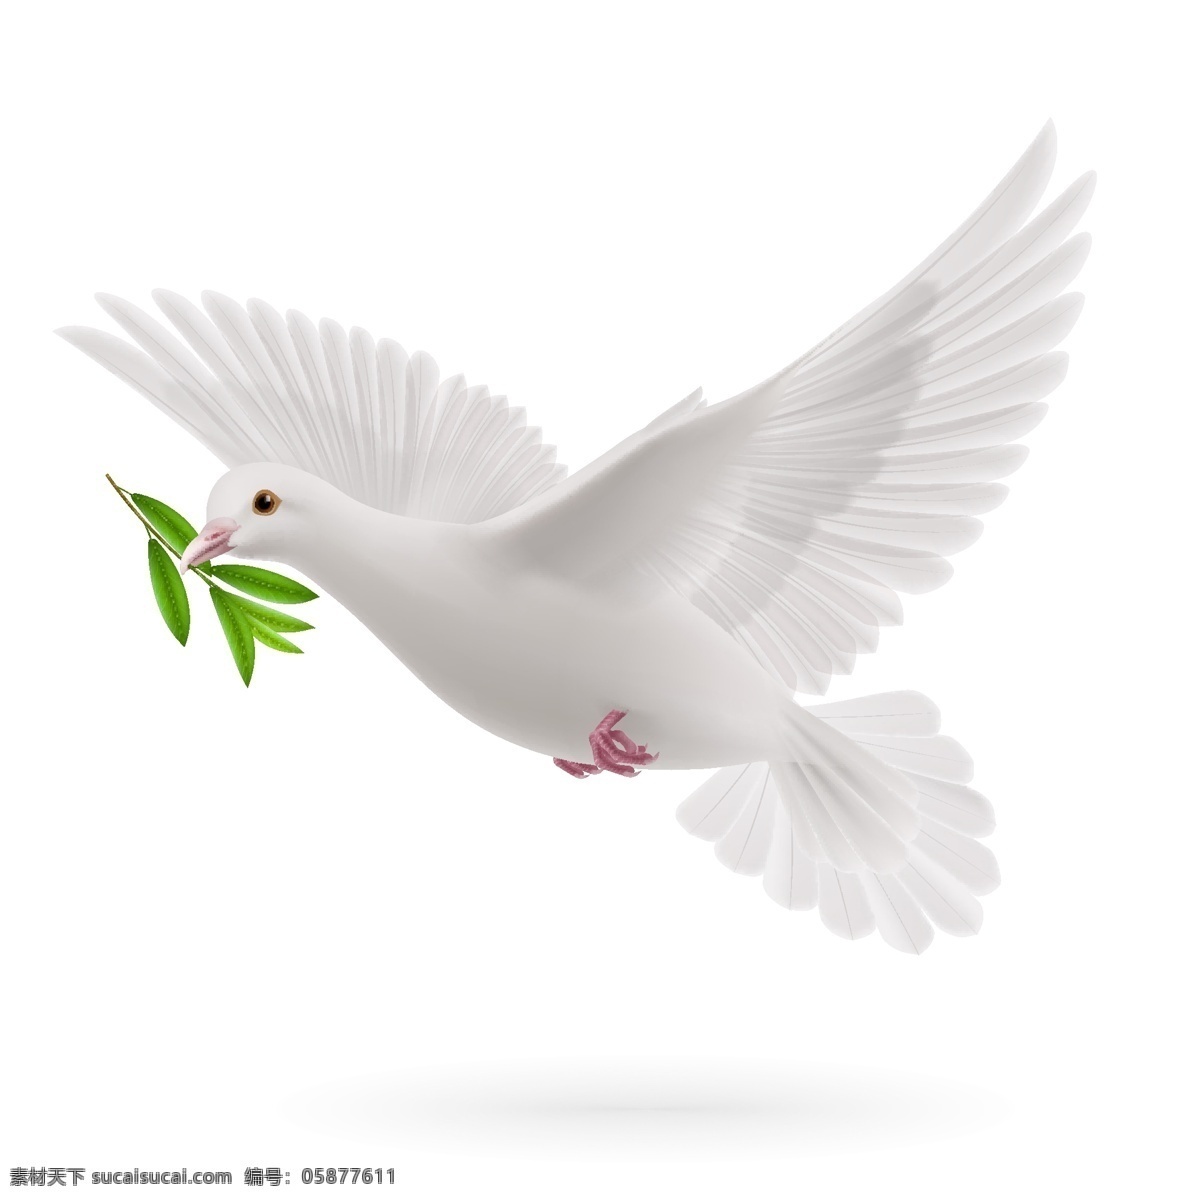 衔 橄榄枝 鸽子 和平鸽 衔橄榄枝鸽子 和平使者 象征和平 生物世界 鸟类